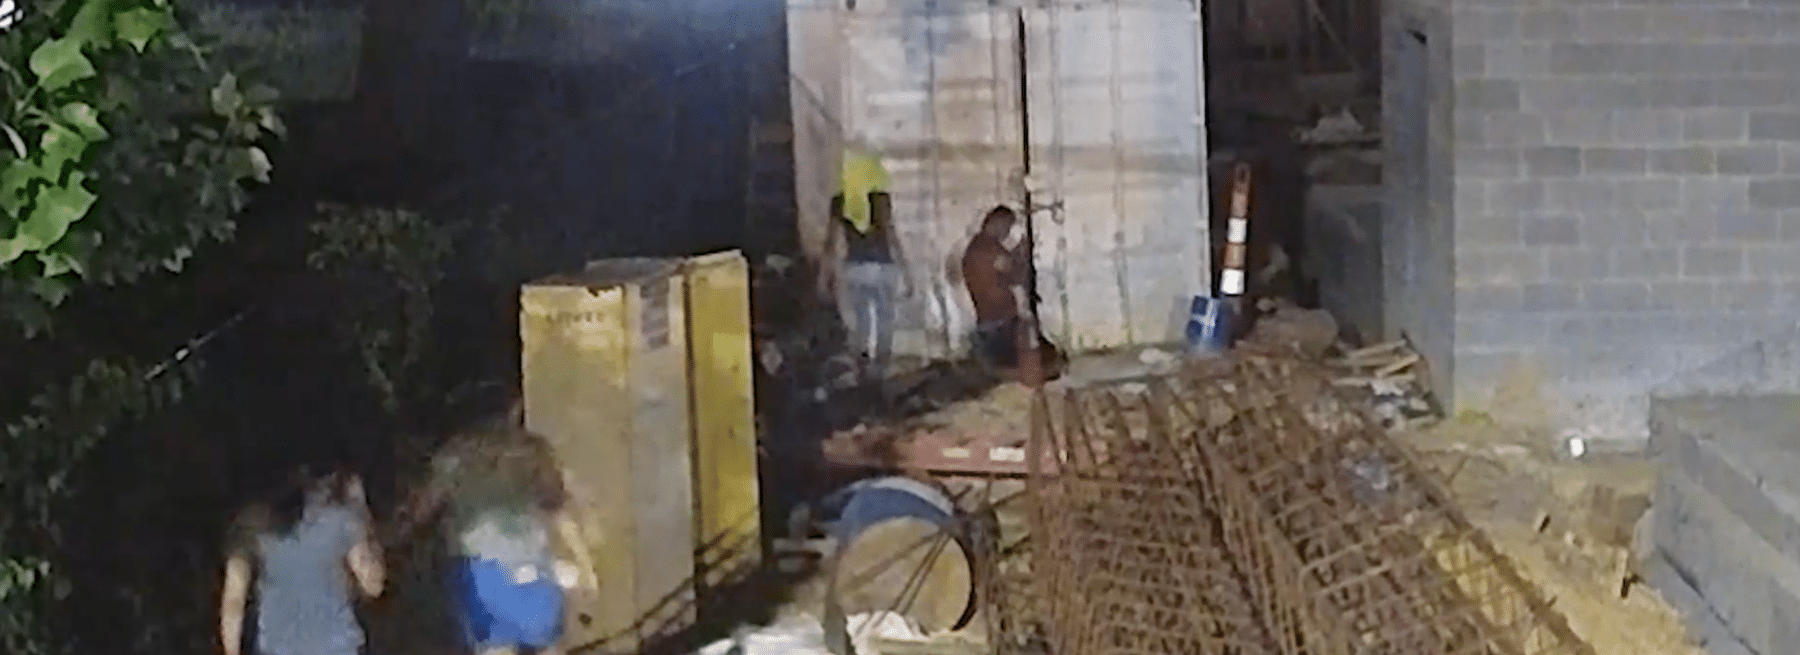 thieves at North Carolina construction site